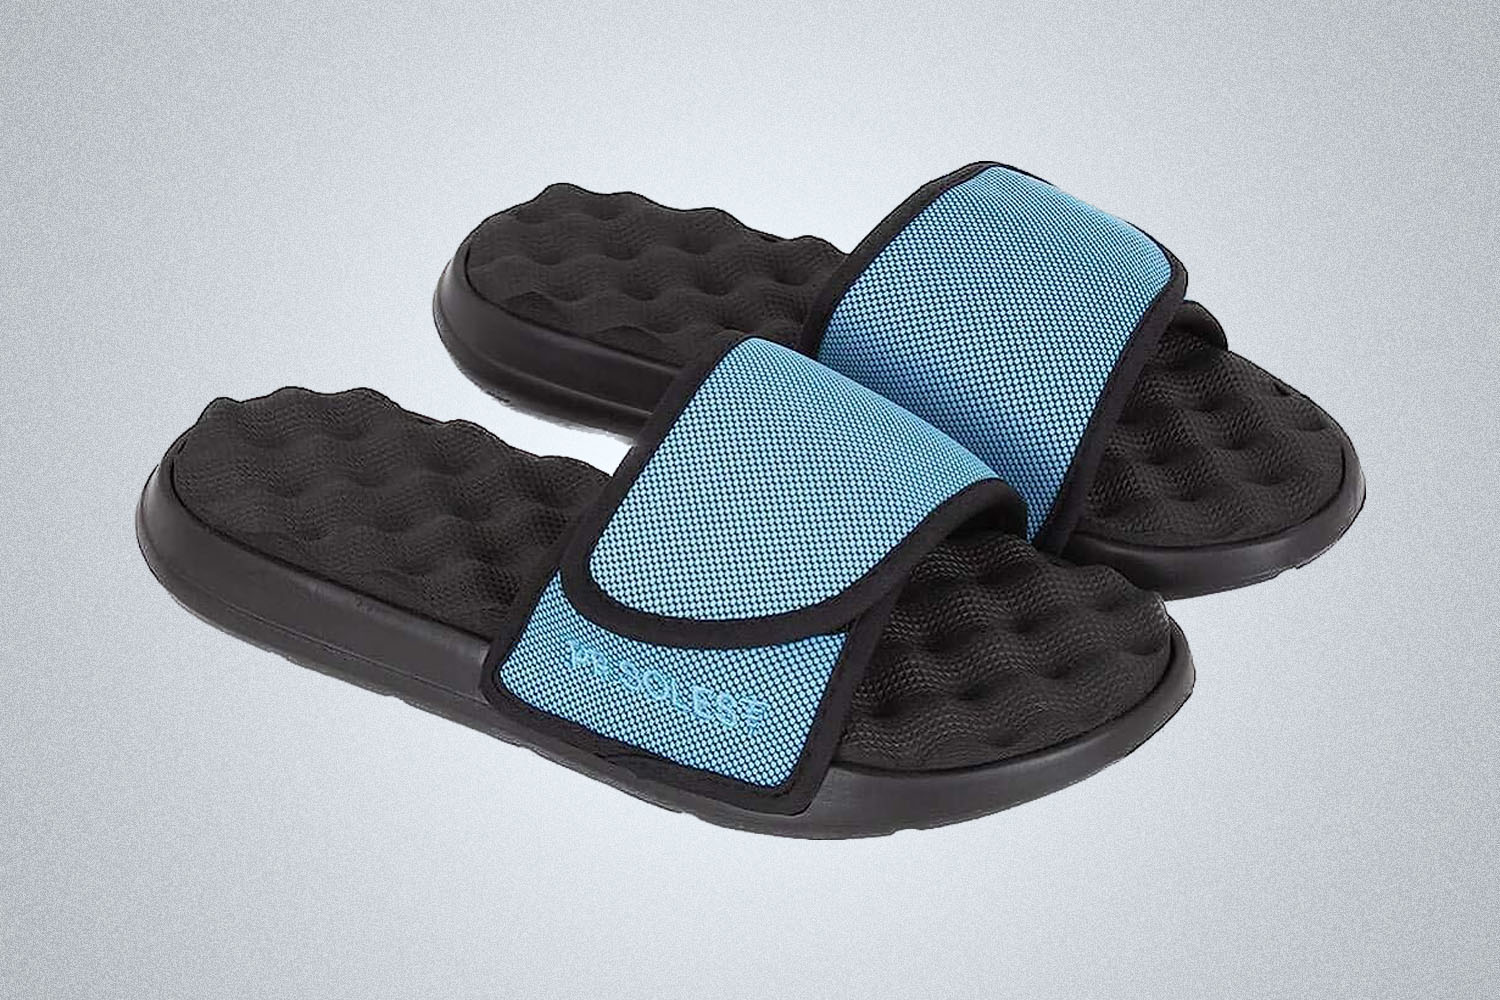 Okabashi Men's Coast Slide Sandals